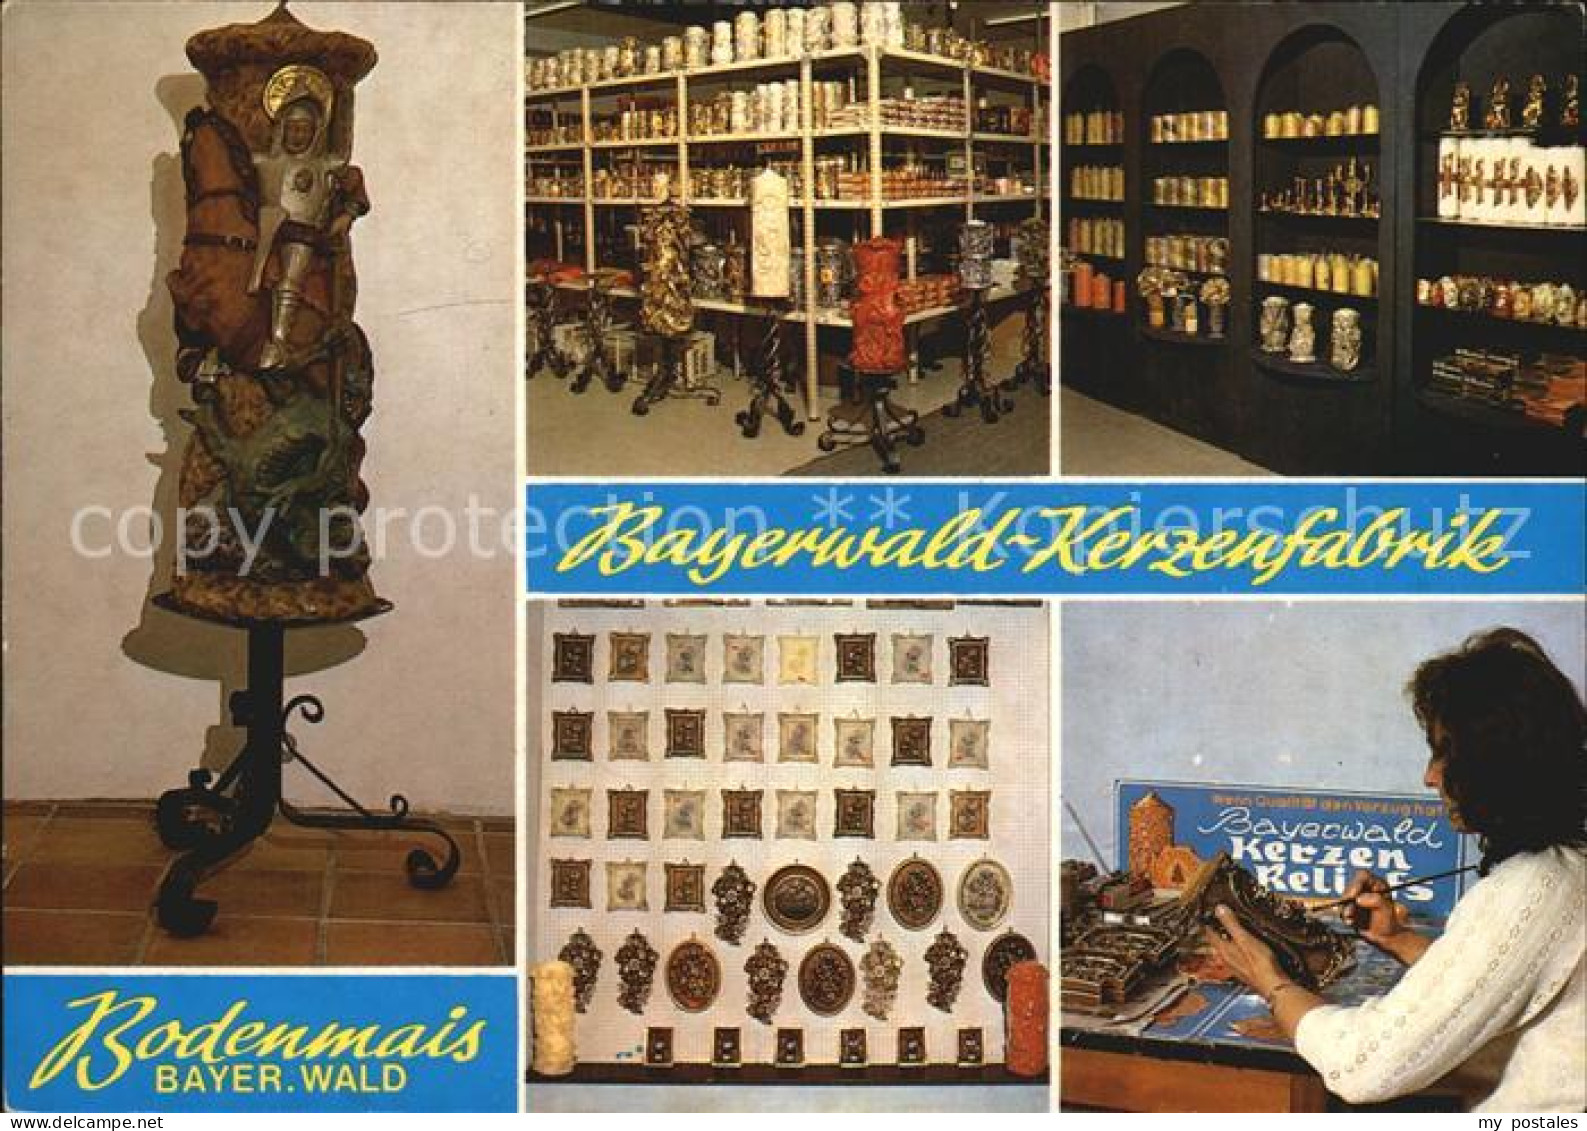 72393298 Bodenmais Bayerwald Kerzenfabrik Details Bodenmais - Bodenmais